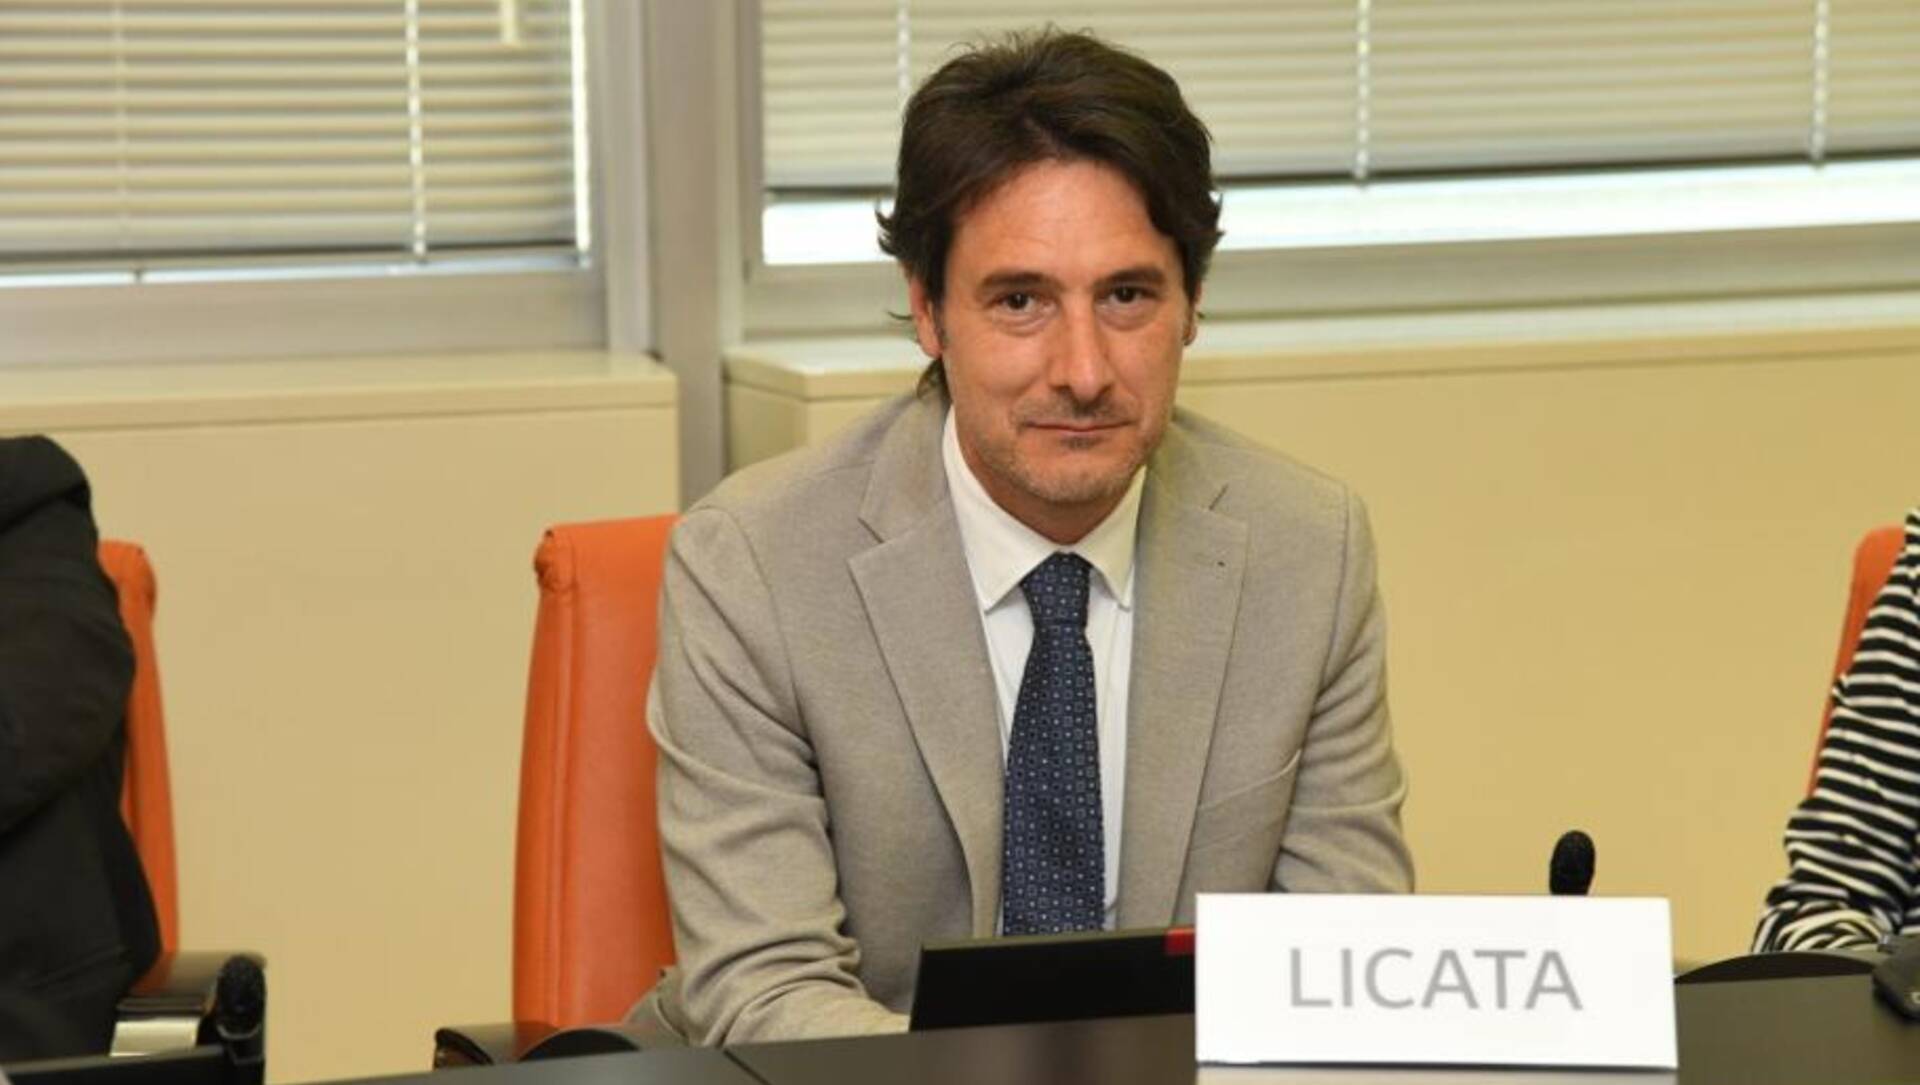 Regione Lombardia, Licata (Iv): “Il Cup dovrebbe essere una priorità, non un’opzione”